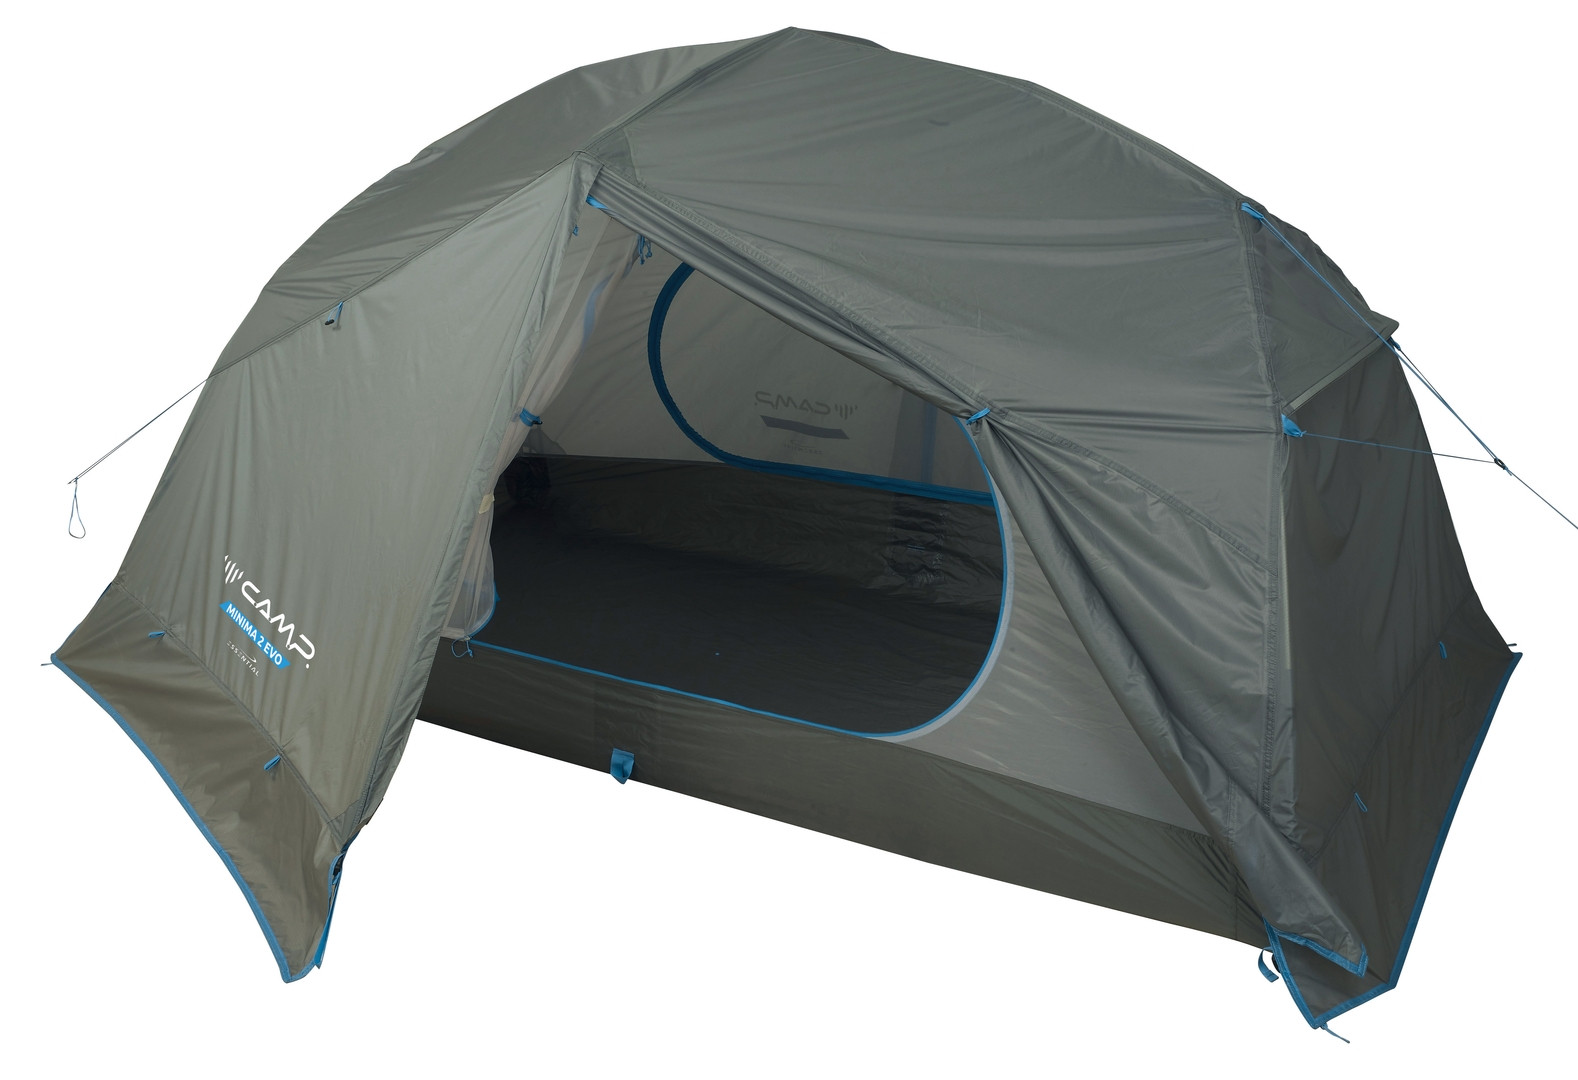 Tente Camp Minima 2 Evo - 2 personnes - Légère, compacte et 3 saisons